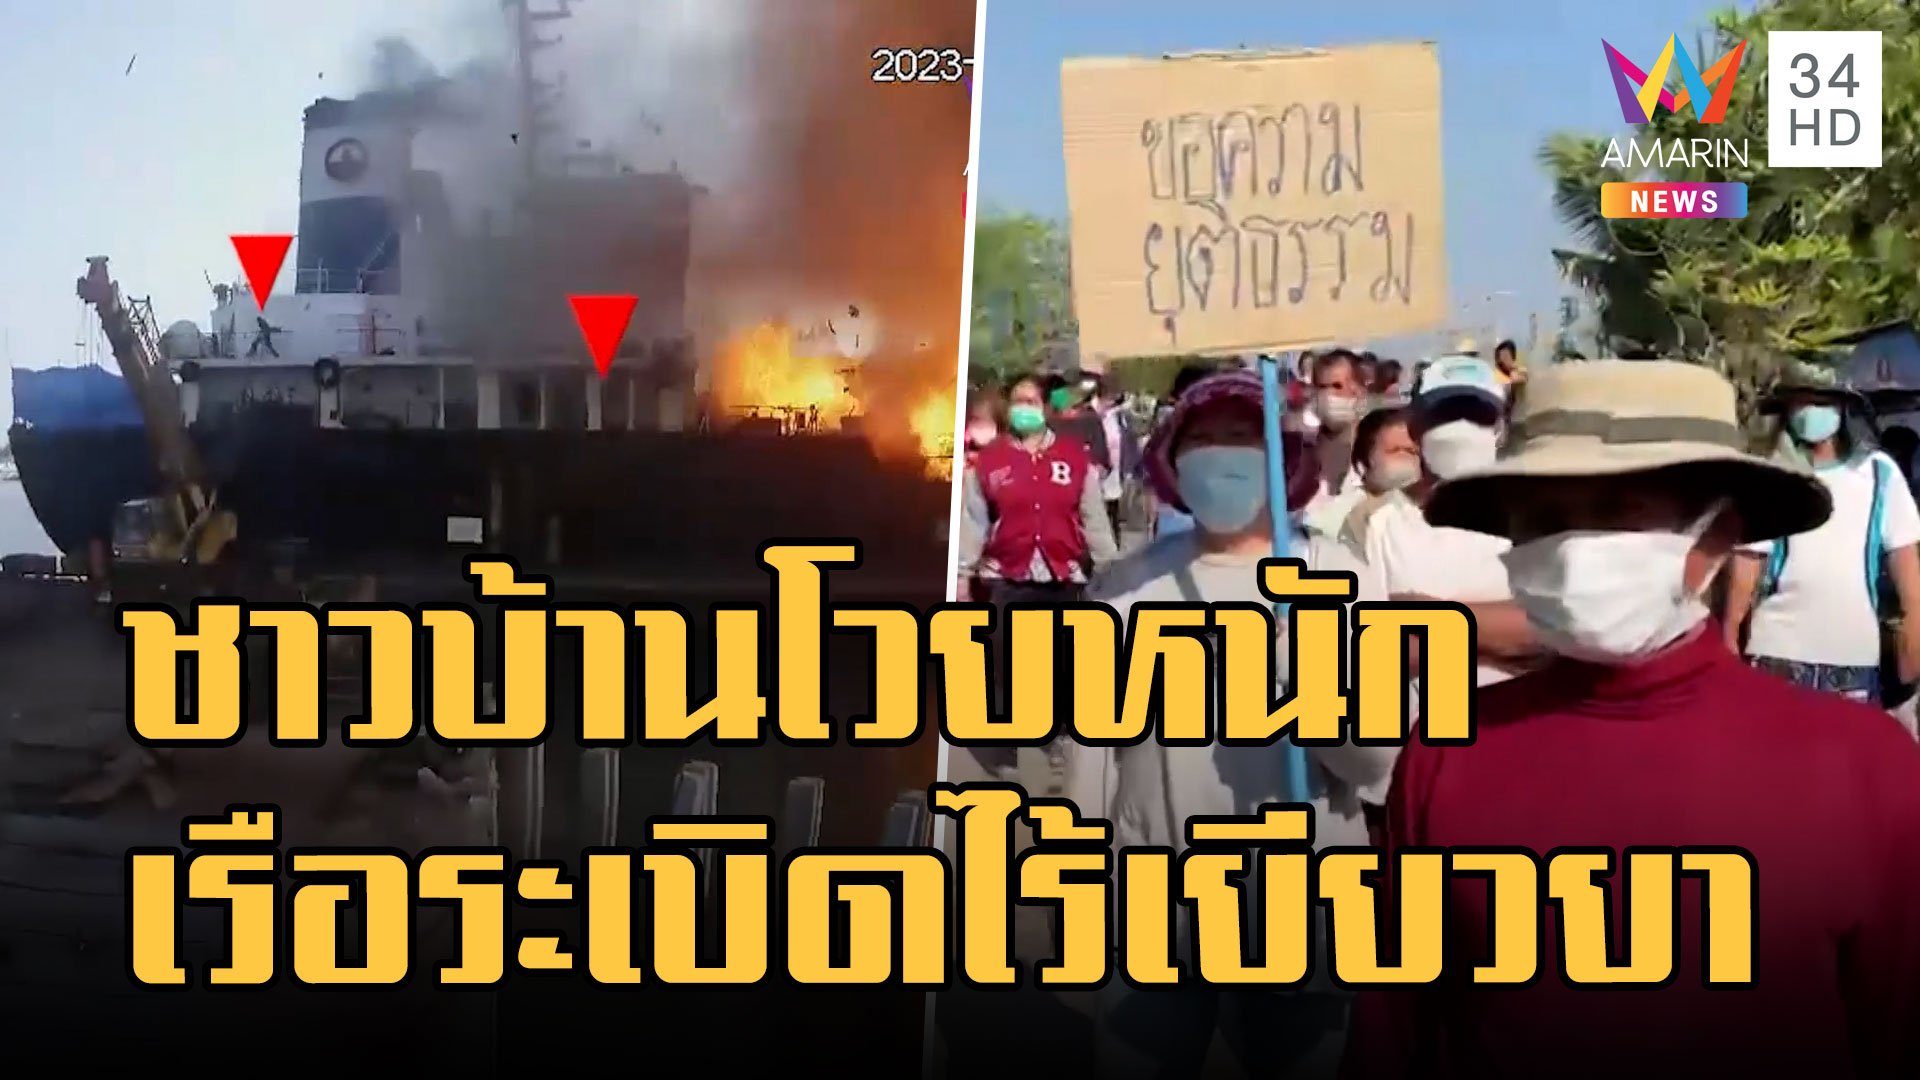 ชาวบ้านประท้วงหลังเรือบรรทุกน้ำมันระเบิดไร้เยียวยา | ข่าวเที่ยงอมรินทร์ | 31 ม.ค. 66 | AMARIN TVHD34